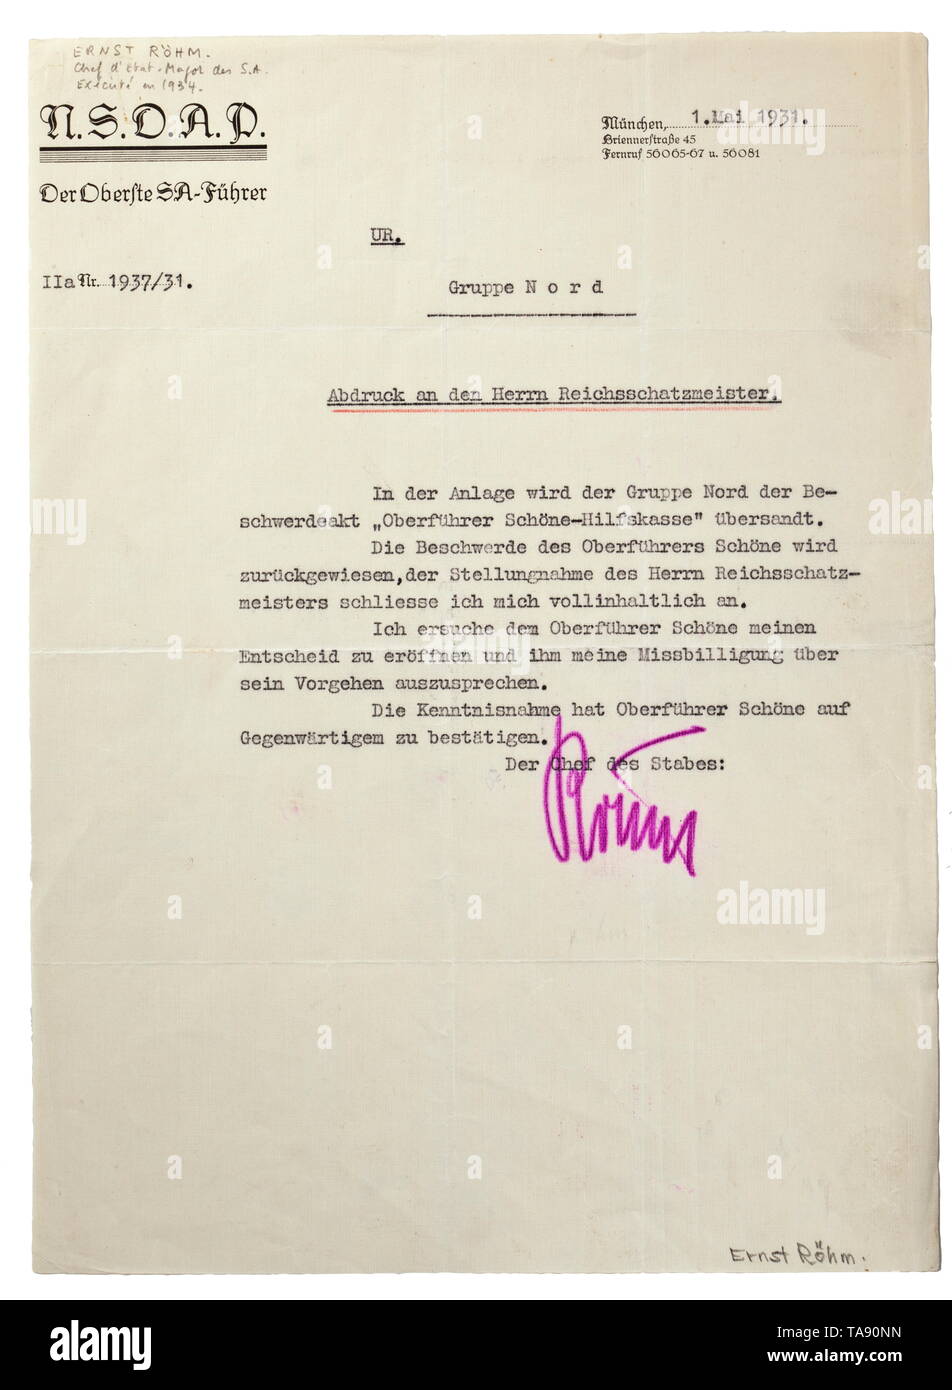 Ernst Röhm - una firma originale del sommo SA leader lettera datata 1 maggio 1931 in merito a una contestazione dal Gruppo a nord, con firma originale di Ernst Röhm (1887 - 1934). Per un lungo periodo Röhm era il leader della tempesta truppe (Sturmabteilung). Senza procedimento giudiziario, Röhm è stato girato il 1 luglio 1934 su per ordine di Hitler dal comandante dei campi di concentramento Theodor Eicke. La presunta "Röhm Putsch" è stato utilizzato da Hitler per la rimozione dei suoi oppositori politici. Segni di piegatura, dimensioni 21 x 29 cm. storica, storica del xx secolo, 1930S, 1940s, storm battaglione, , Editorial-Use-solo Foto Stock